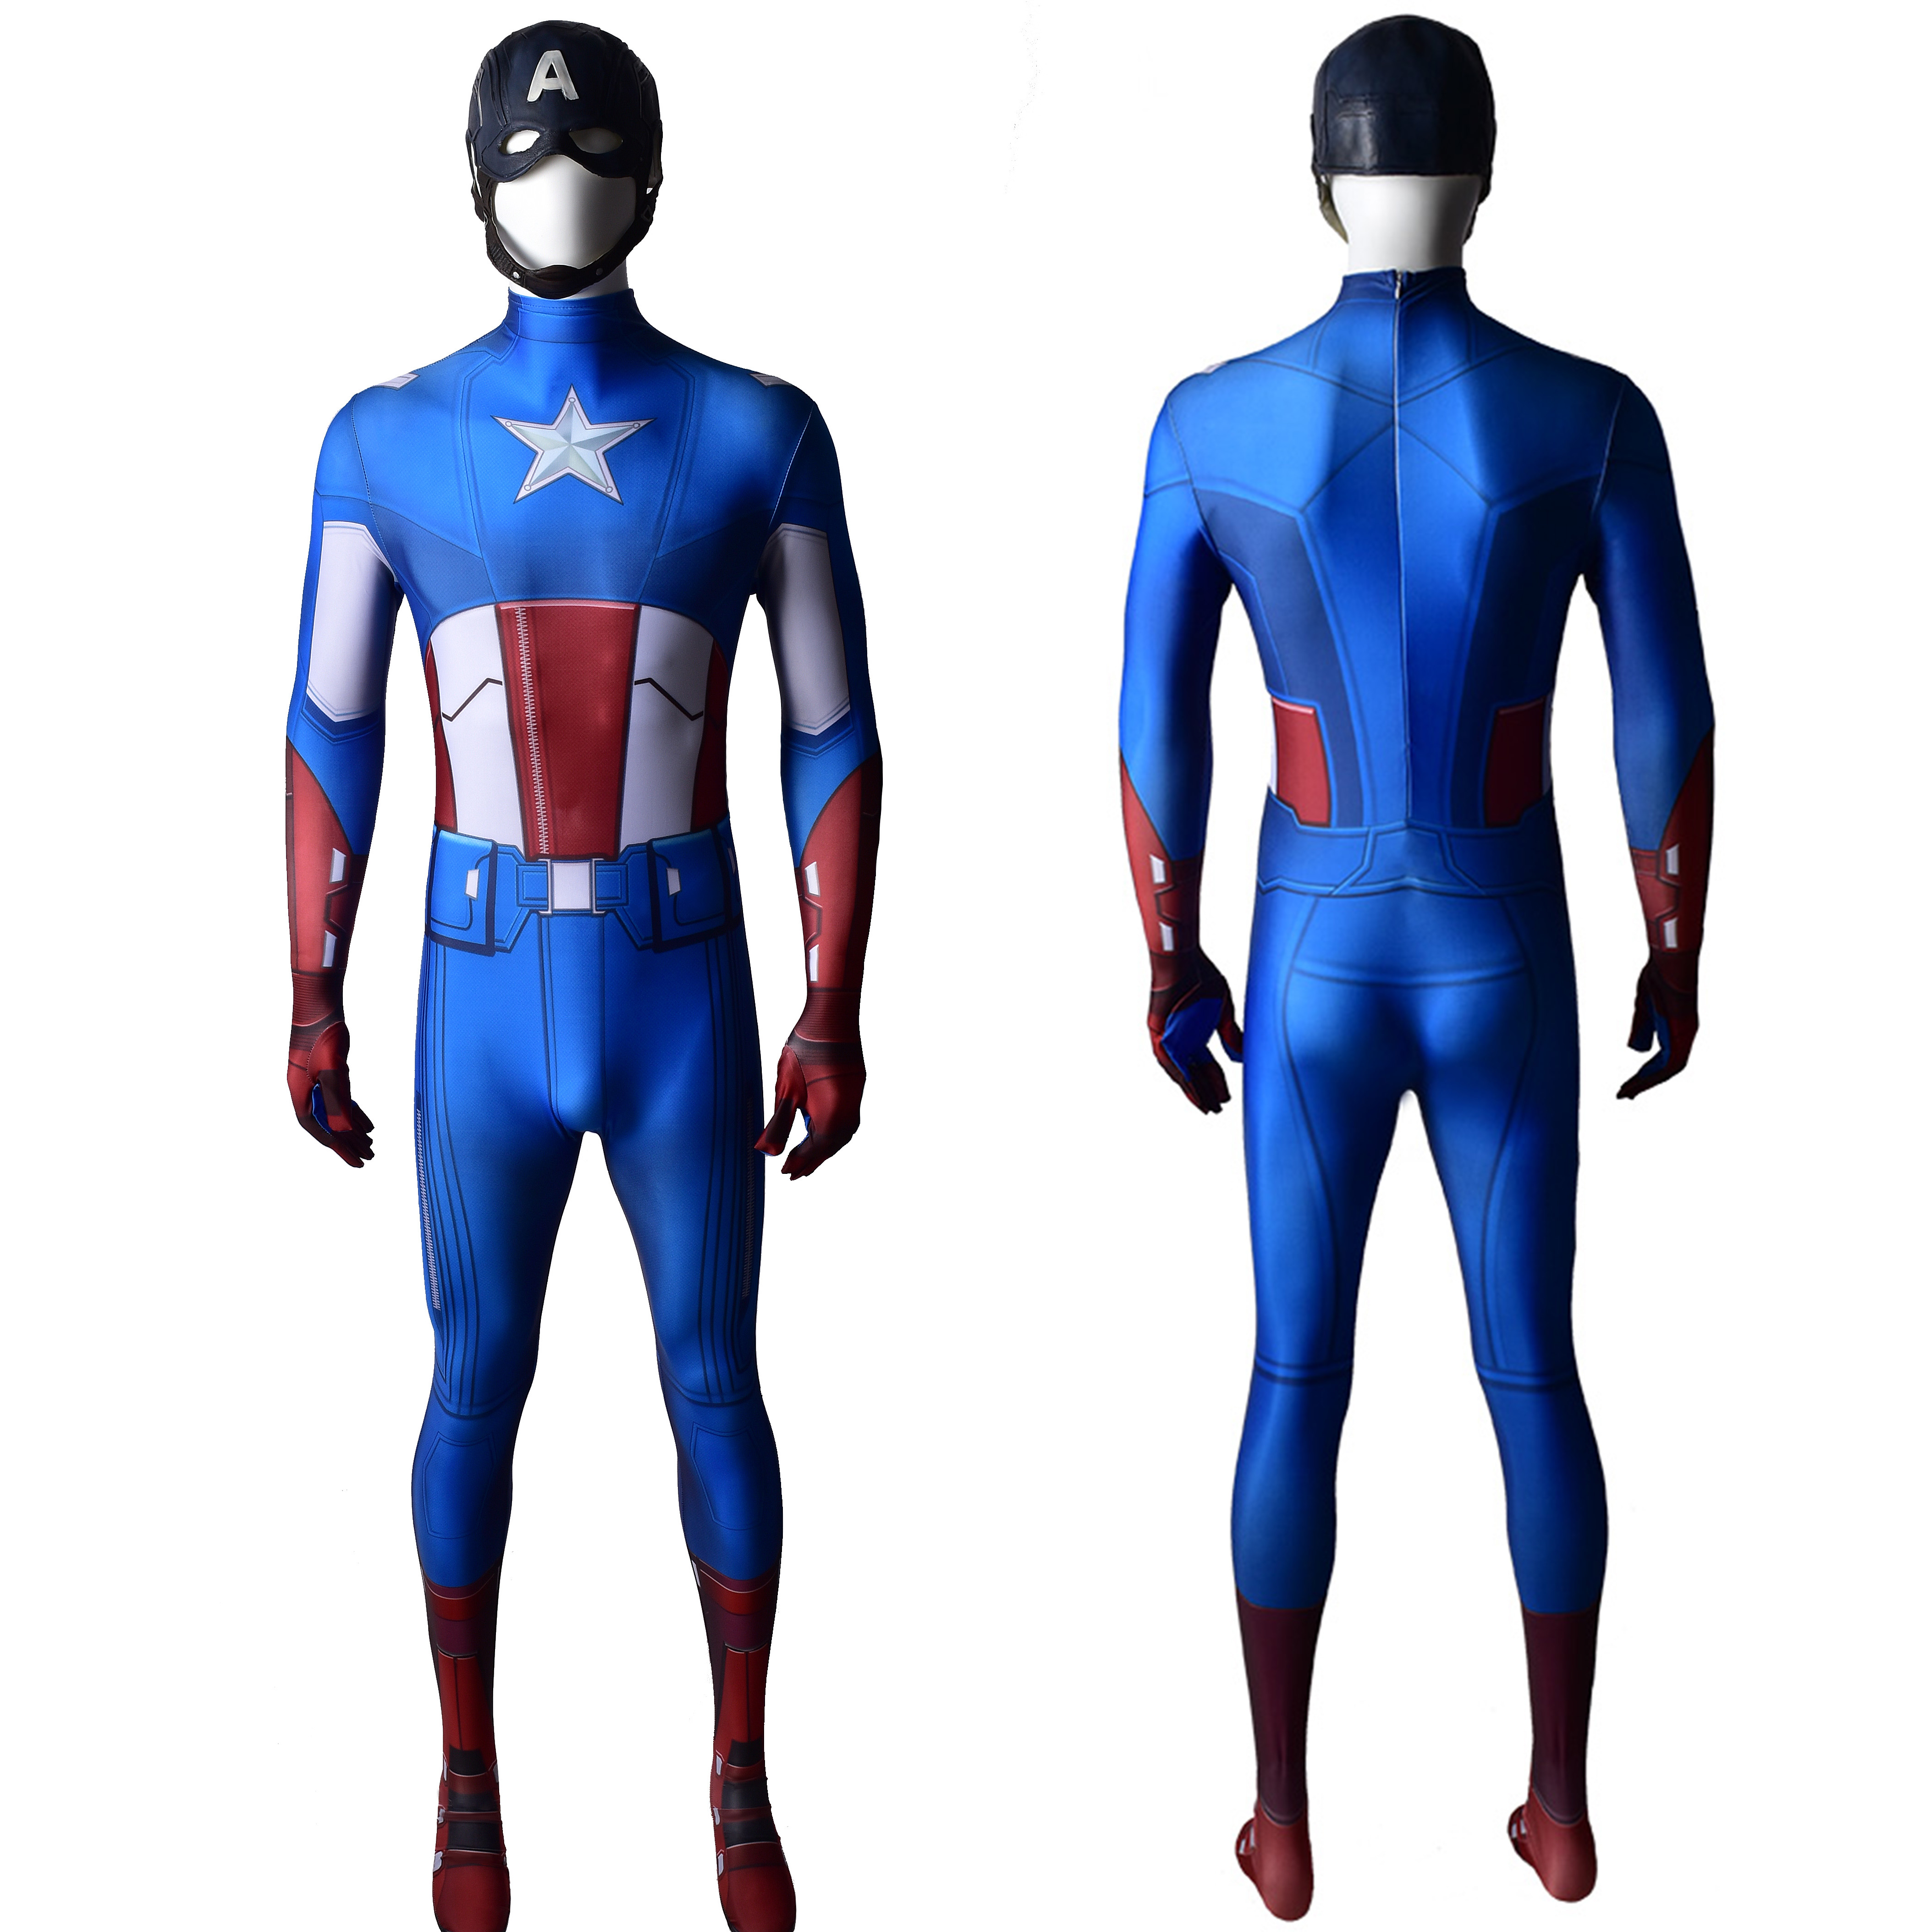 Männer Marvel Superhelden Universum Captain America Deluxe Kostüm kreative einzigartige Kostüme für Halloween Party Show Geburtstagsgeschenke